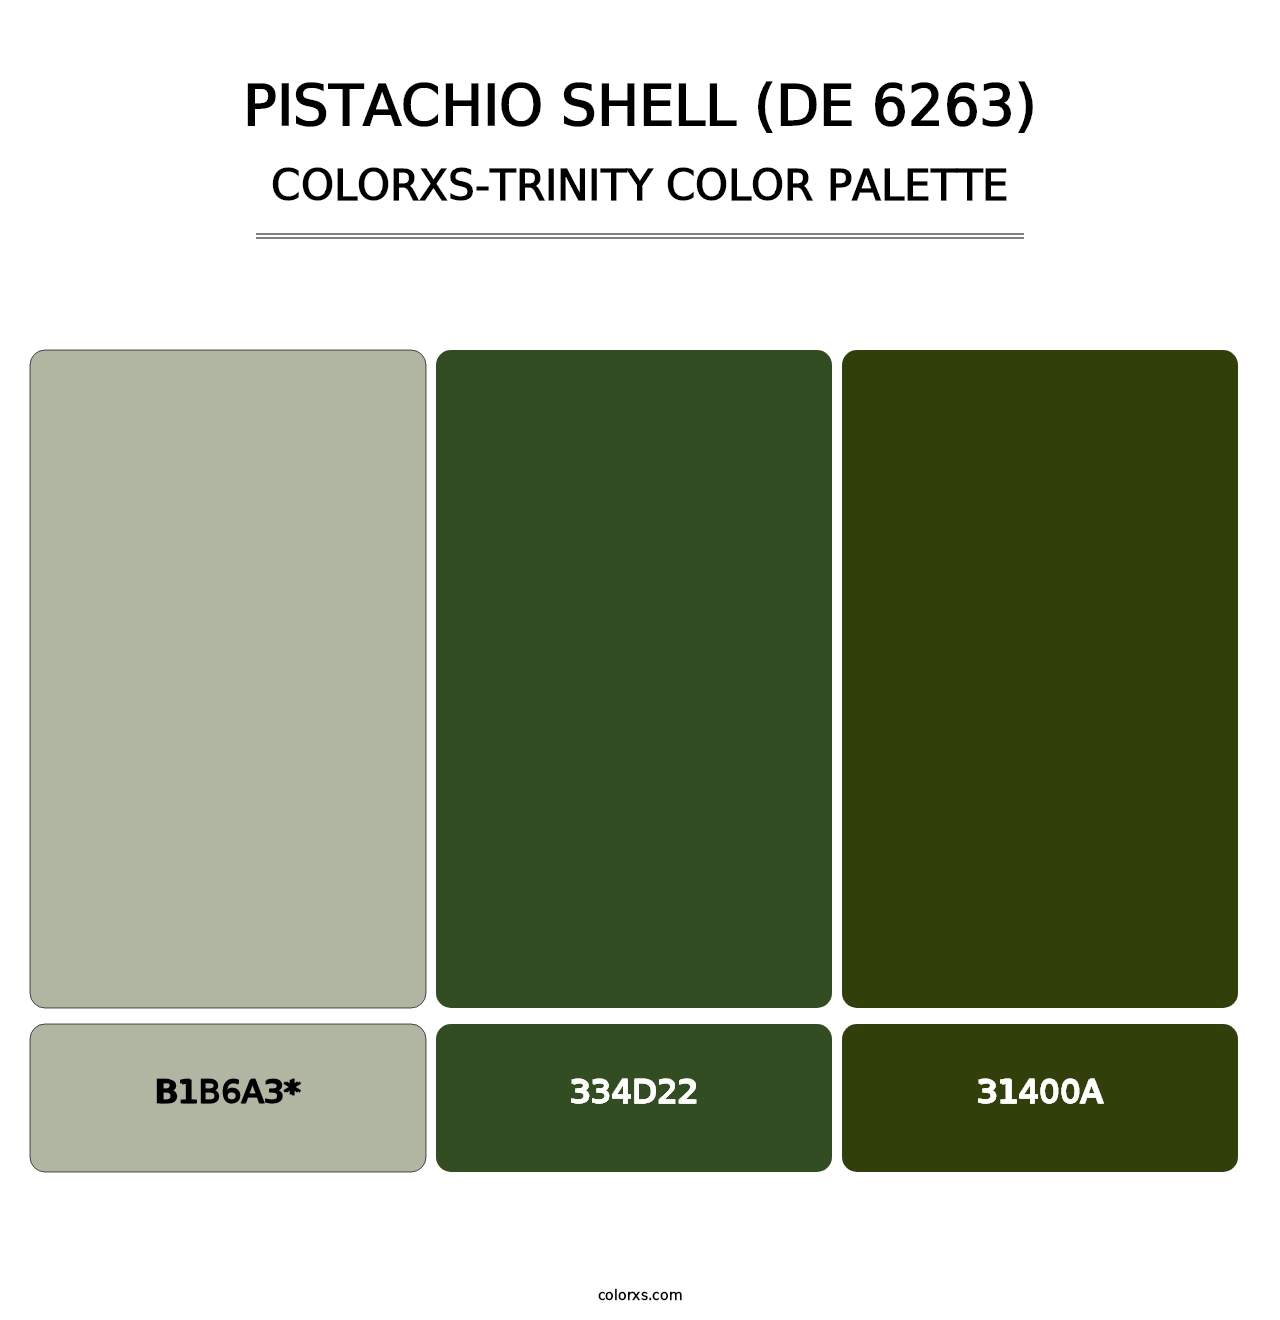 Pistachio Shell (DE 6263) - Colorxs Trinity Palette